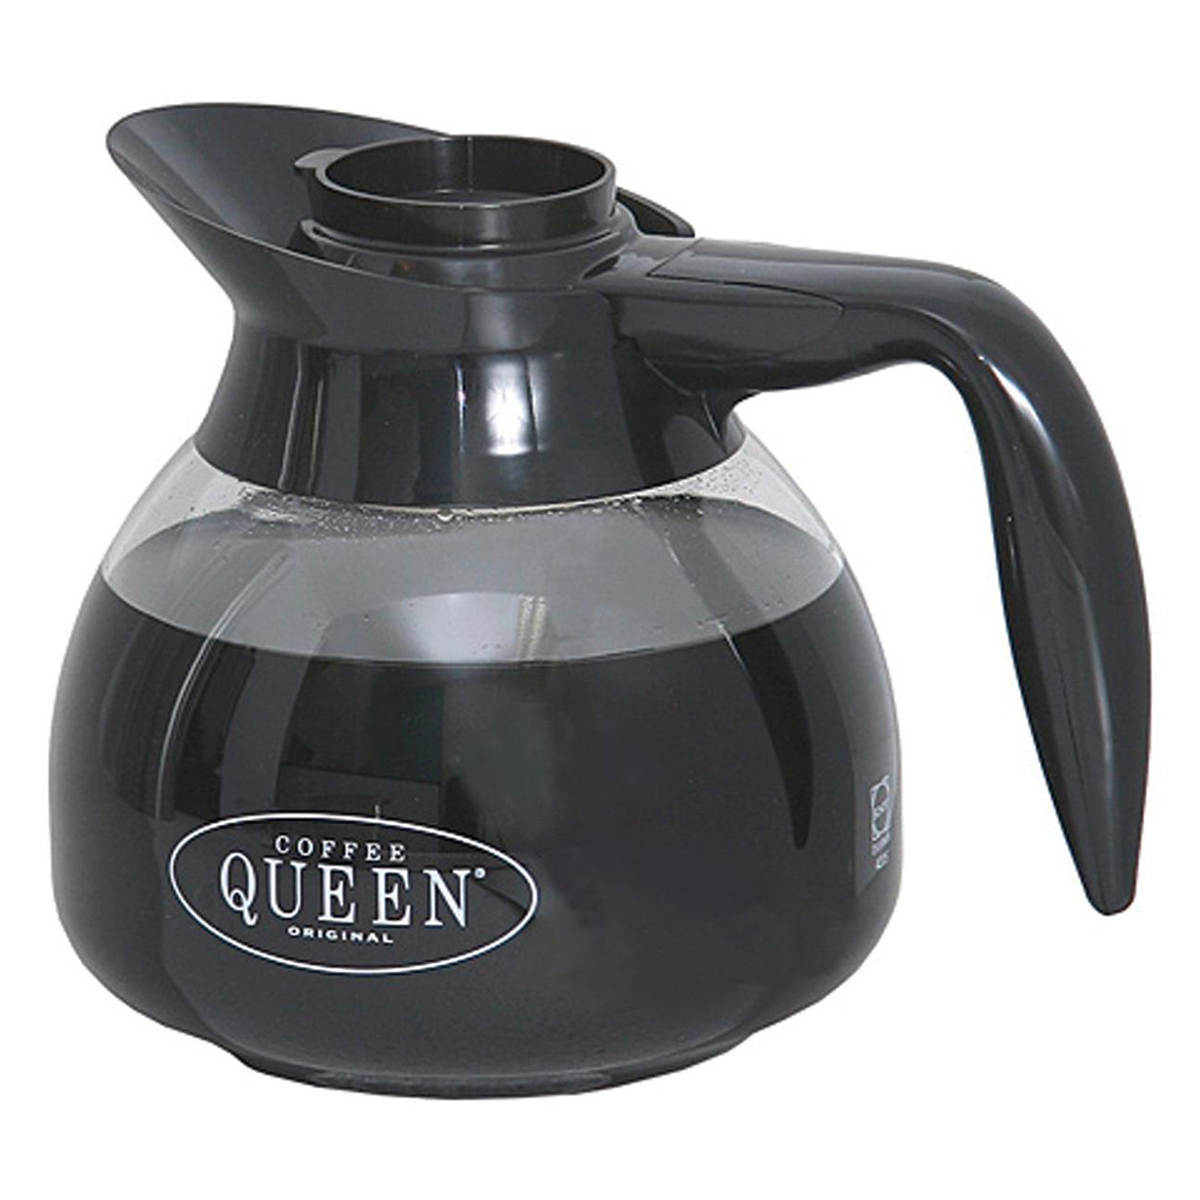 Стеклянная колба для кофеварки. Кофеварка Queen. Coffee Queen кофемашина. Стеклянный кувшин для кофеварки Coffee Queen. Кофеварка Coffee Queen DM-4.